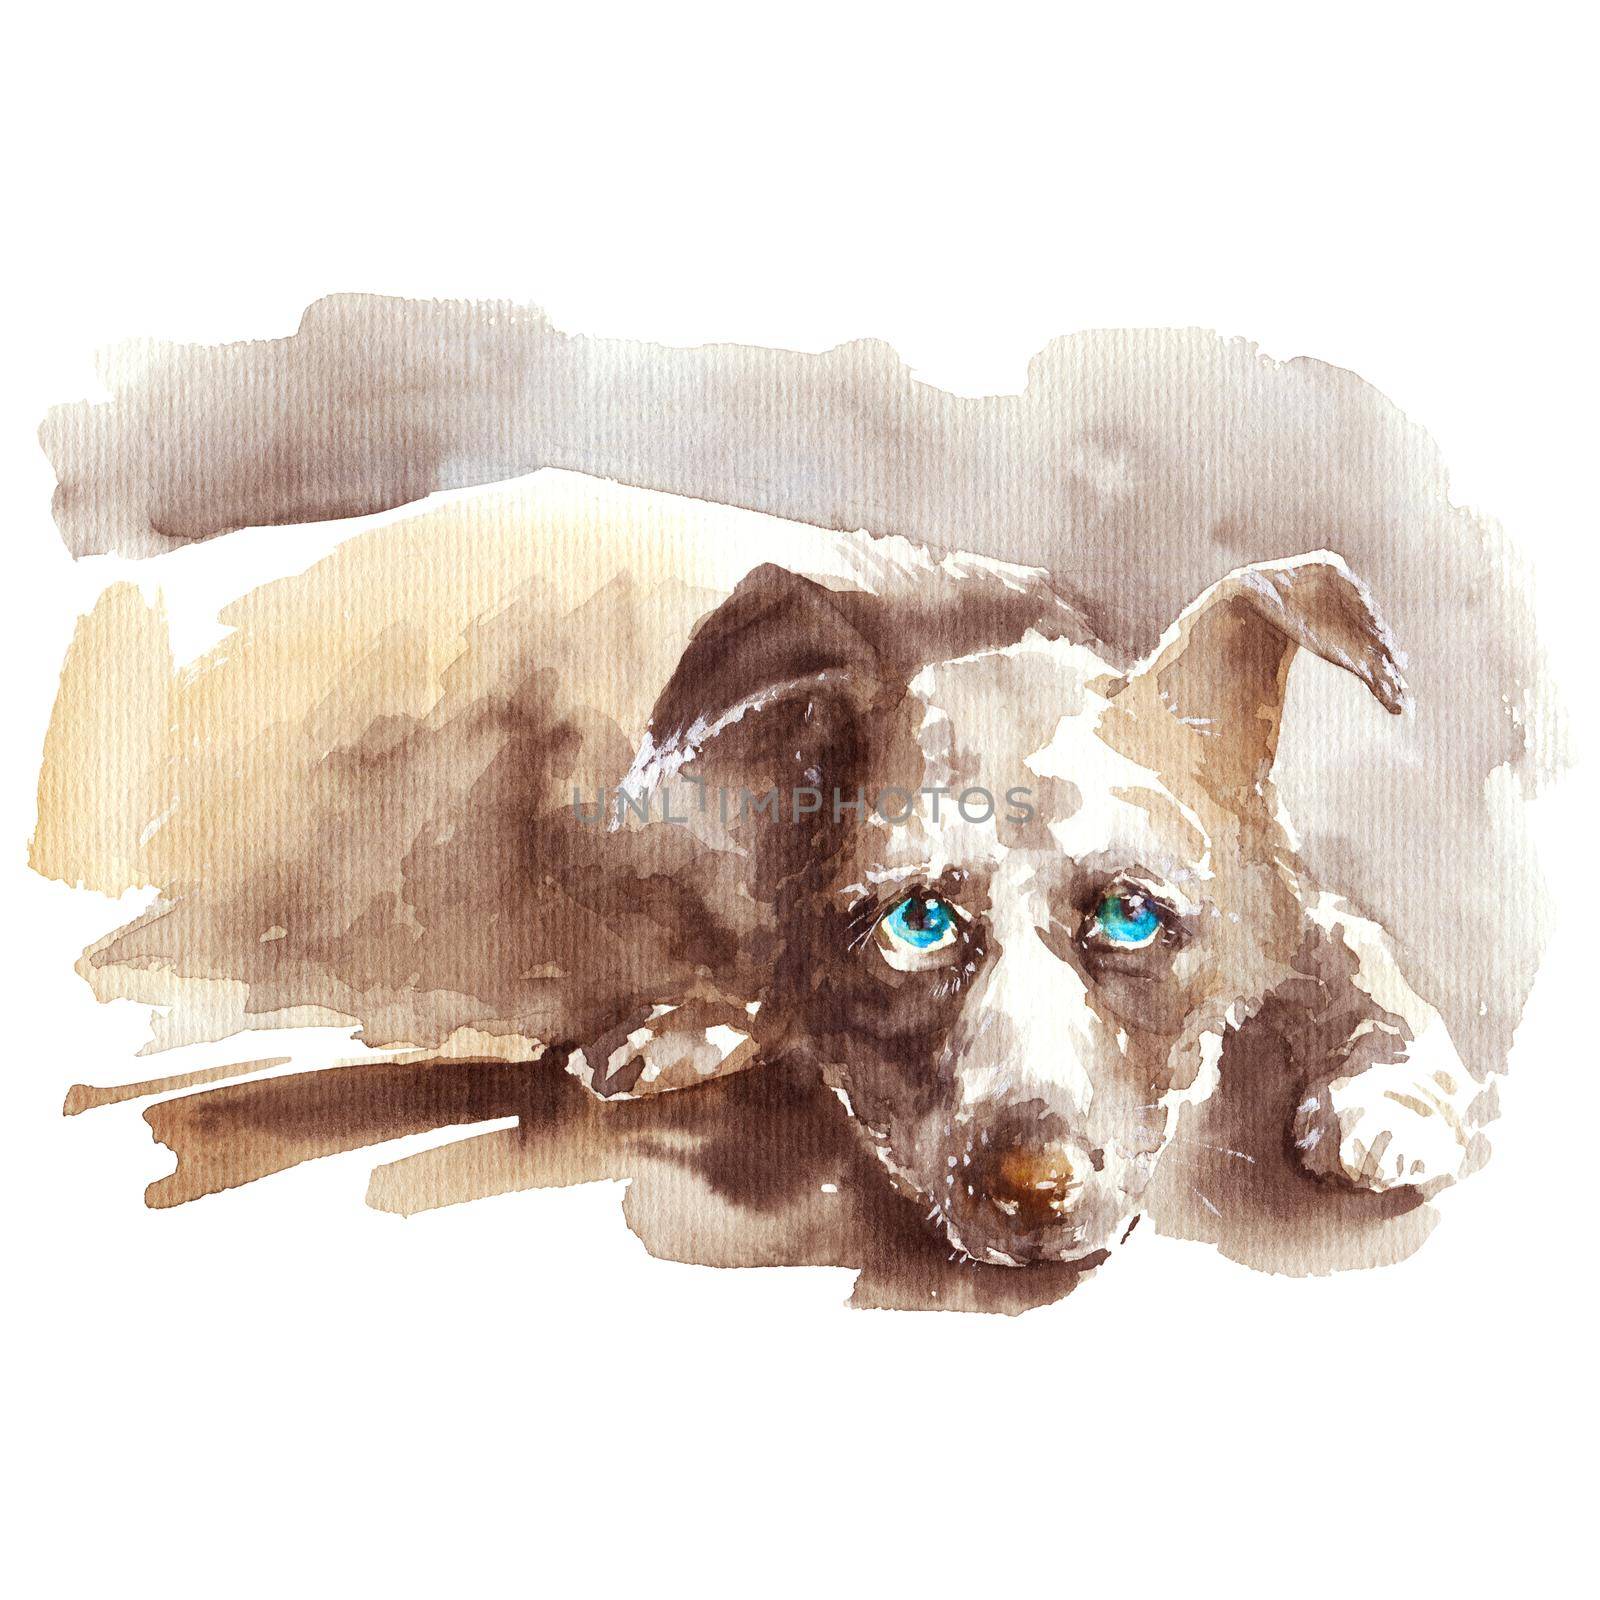 Watercolor portrait of dog by Olatarakanova